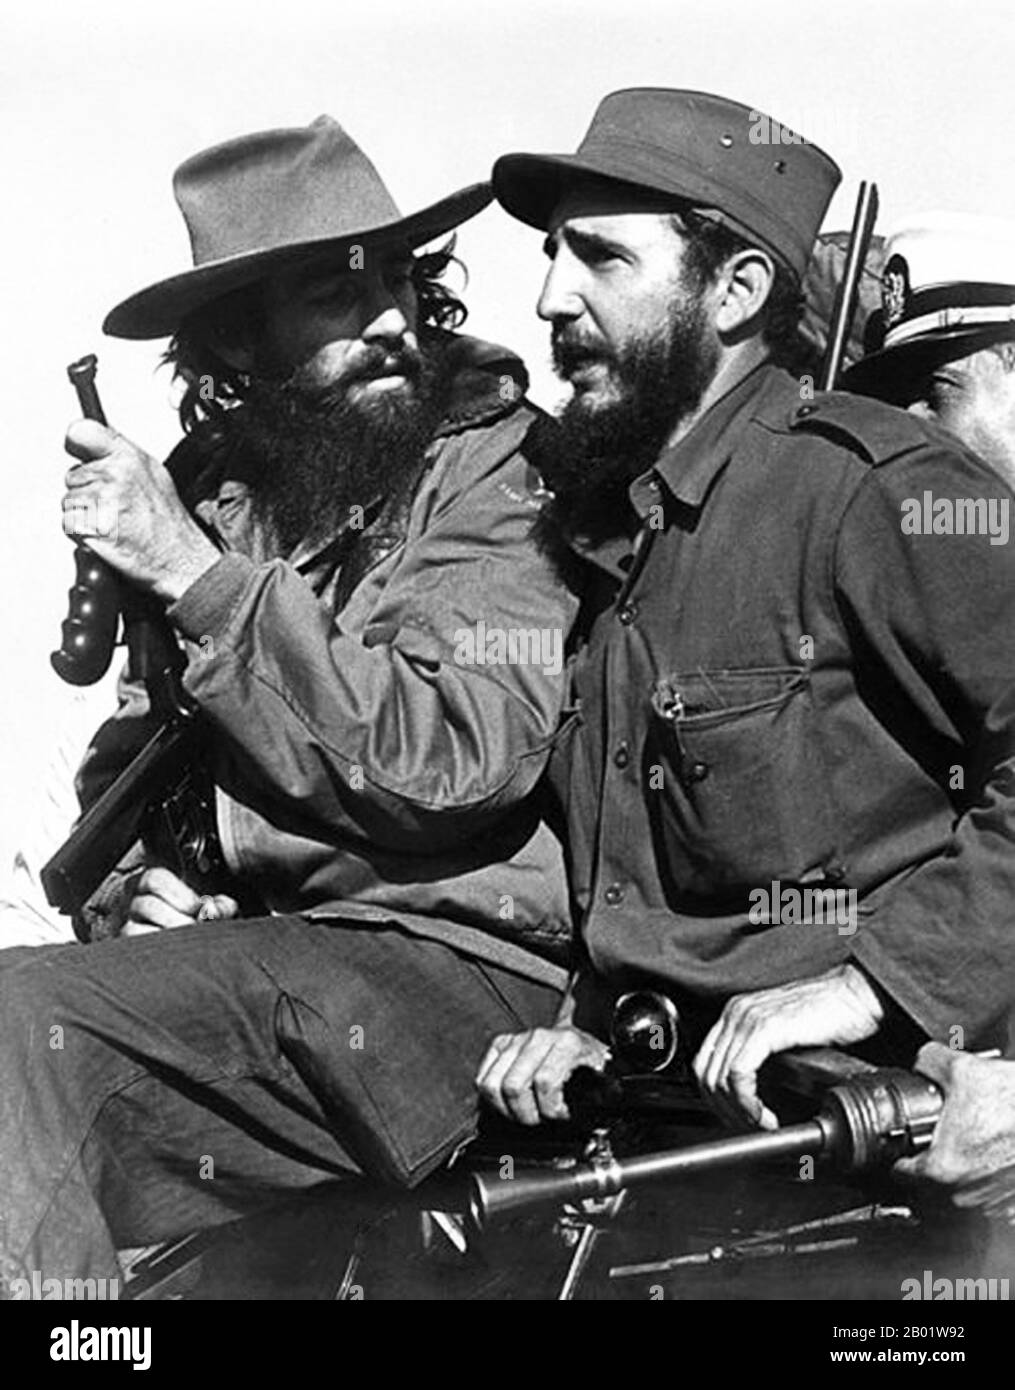 Cuba : Camilo Cienfuegos (à gauche) s'entretient avec Fidel Castro (à droite), la Havane, 1959. Fidel Alejandro Castro Ruz (13 août 1926 - 25 novembre 2016) était un dirigeant politique cubain et révolutionnaire communiste. En tant que premier dirigeant de la Révolution cubaine, Castro a été premier Ministre de Cuba de février 1959 à décembre 1976, puis en tant que Président du Conseil d'État de Cuba et Président du Conseil des ministres de Cuba jusqu'à sa démission de ses fonctions en février 2008. Il a été premier secrétaire du Parti communiste de Cuba à partir de la fondation du parti en 1961. Banque D'Images